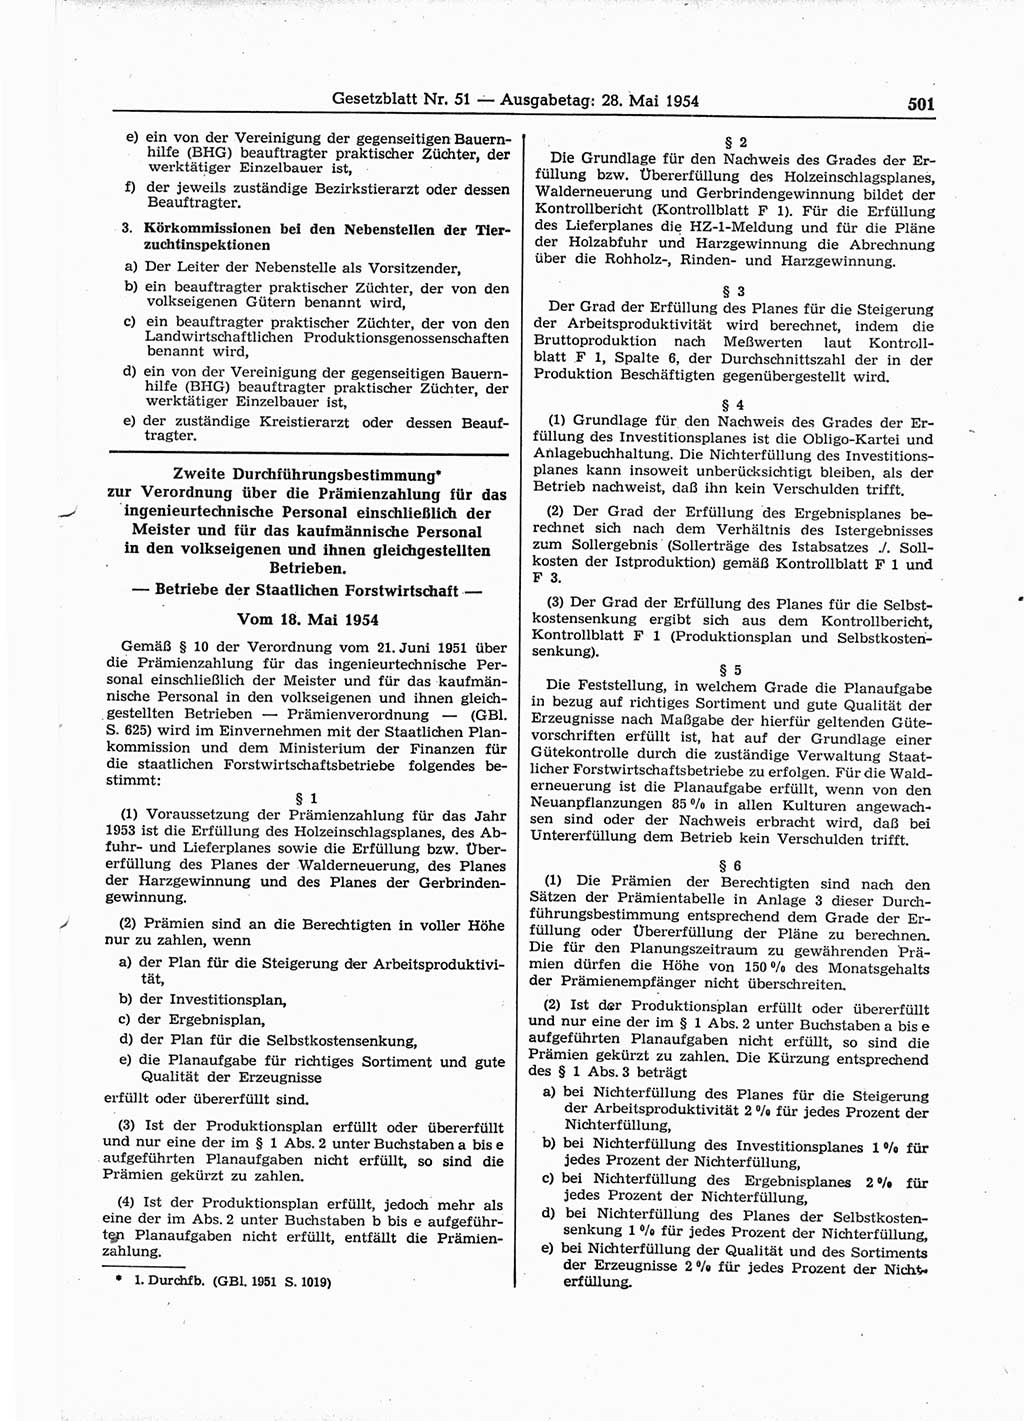 Gesetzblatt (GBl.) der Deutschen Demokratischen Republik (DDR) 1954, Seite 501 (GBl. DDR 1954, S. 501)